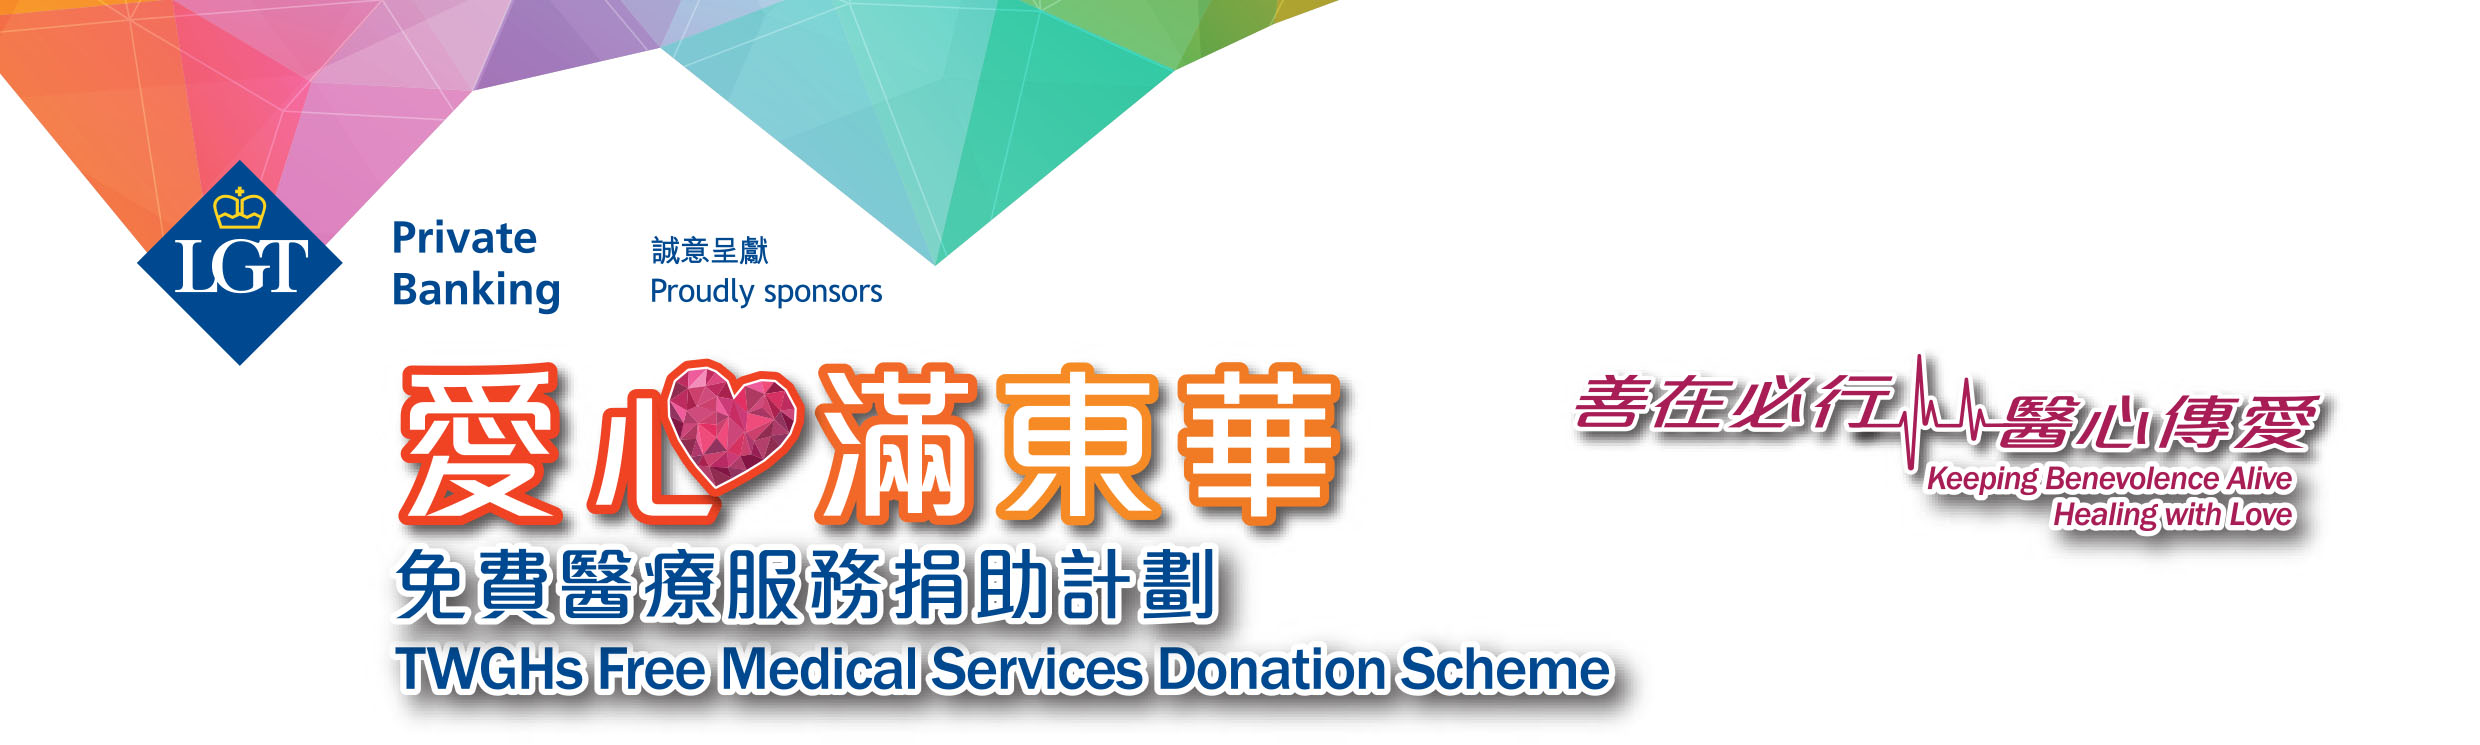 LGT私人银行诚意呈献：「爱心满东华」免费医疗服务捐助计划